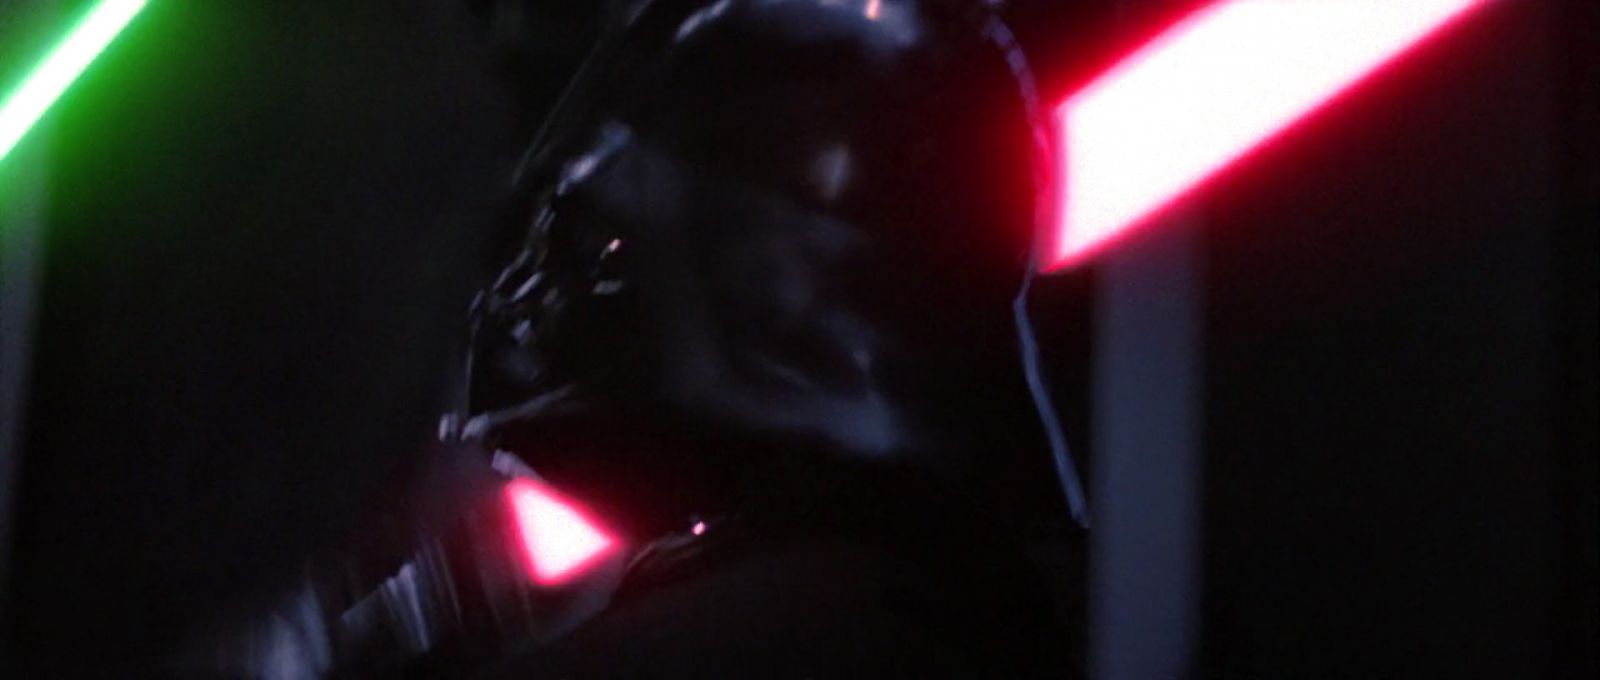 ROTJ-Vader-12825.jpg